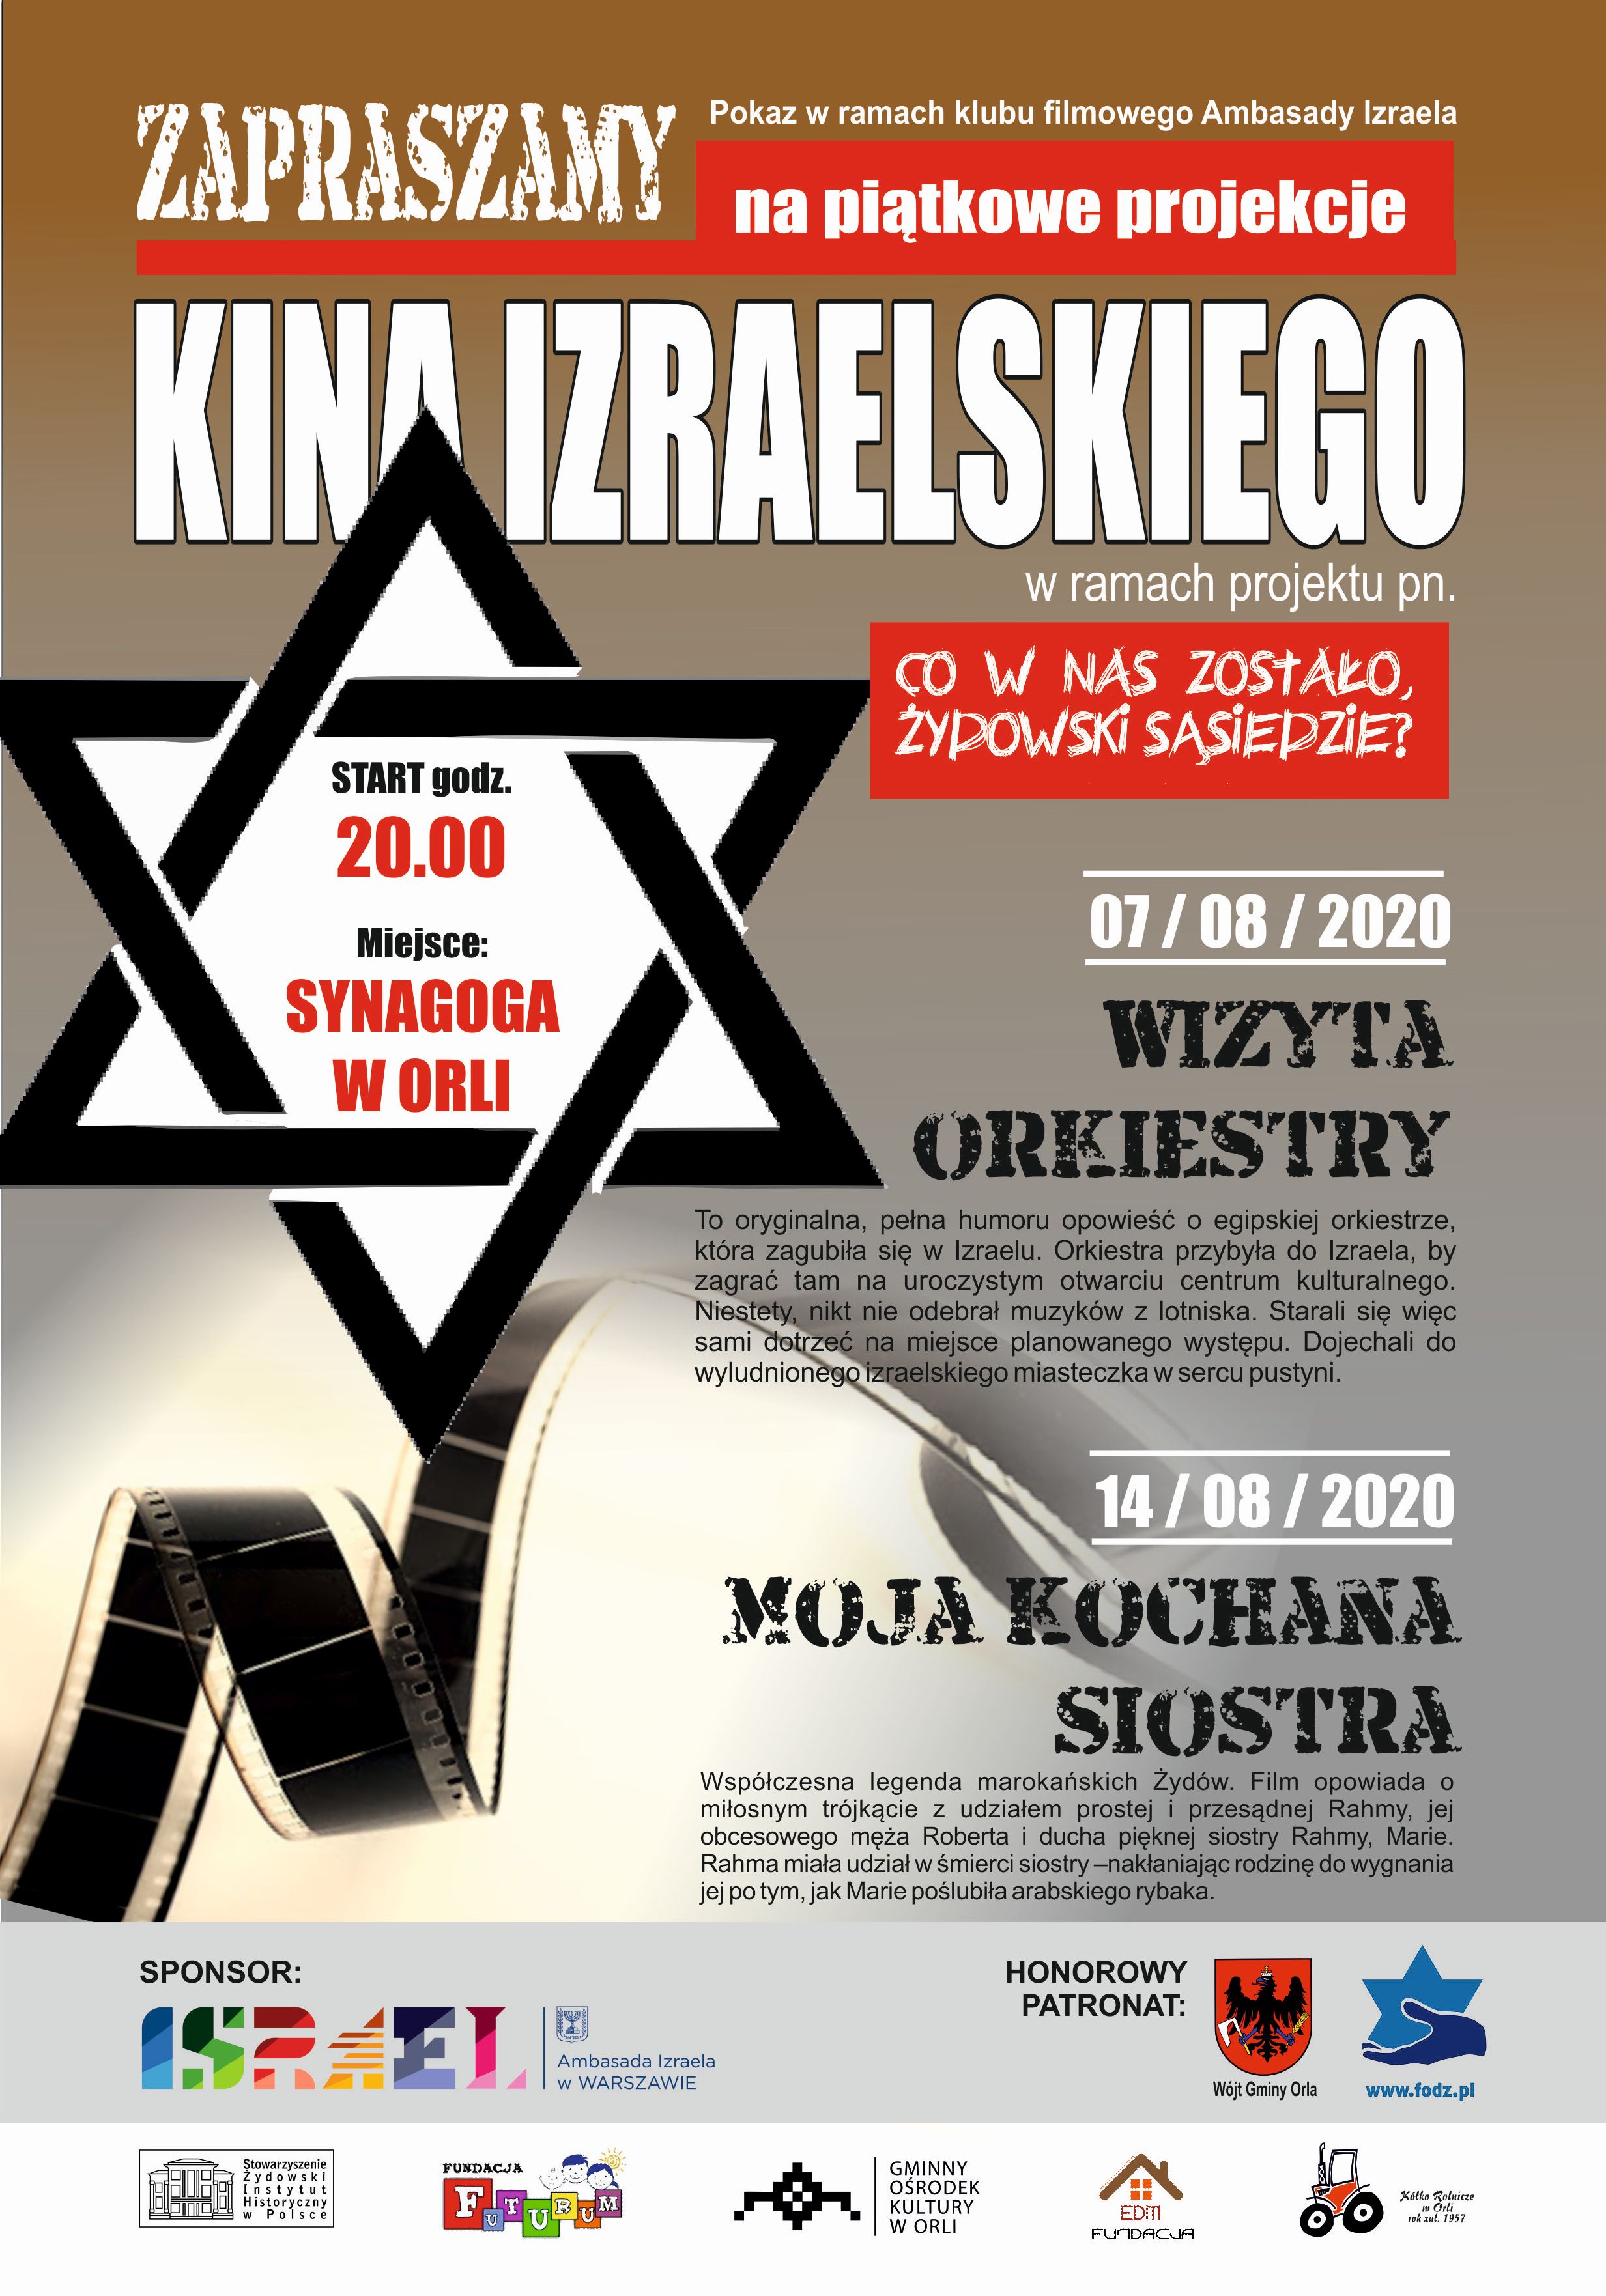 Zapraszamy na projekcje filmów izraelskich w synagodze w Orli w każdy piątek o godzinie 20 w ramach projektu Co w nas zostało żydowski sąsiedzie. 7 sierpnia film "Wizyta Orkiestry", 14 sierpnia "Moja kochana siostra"